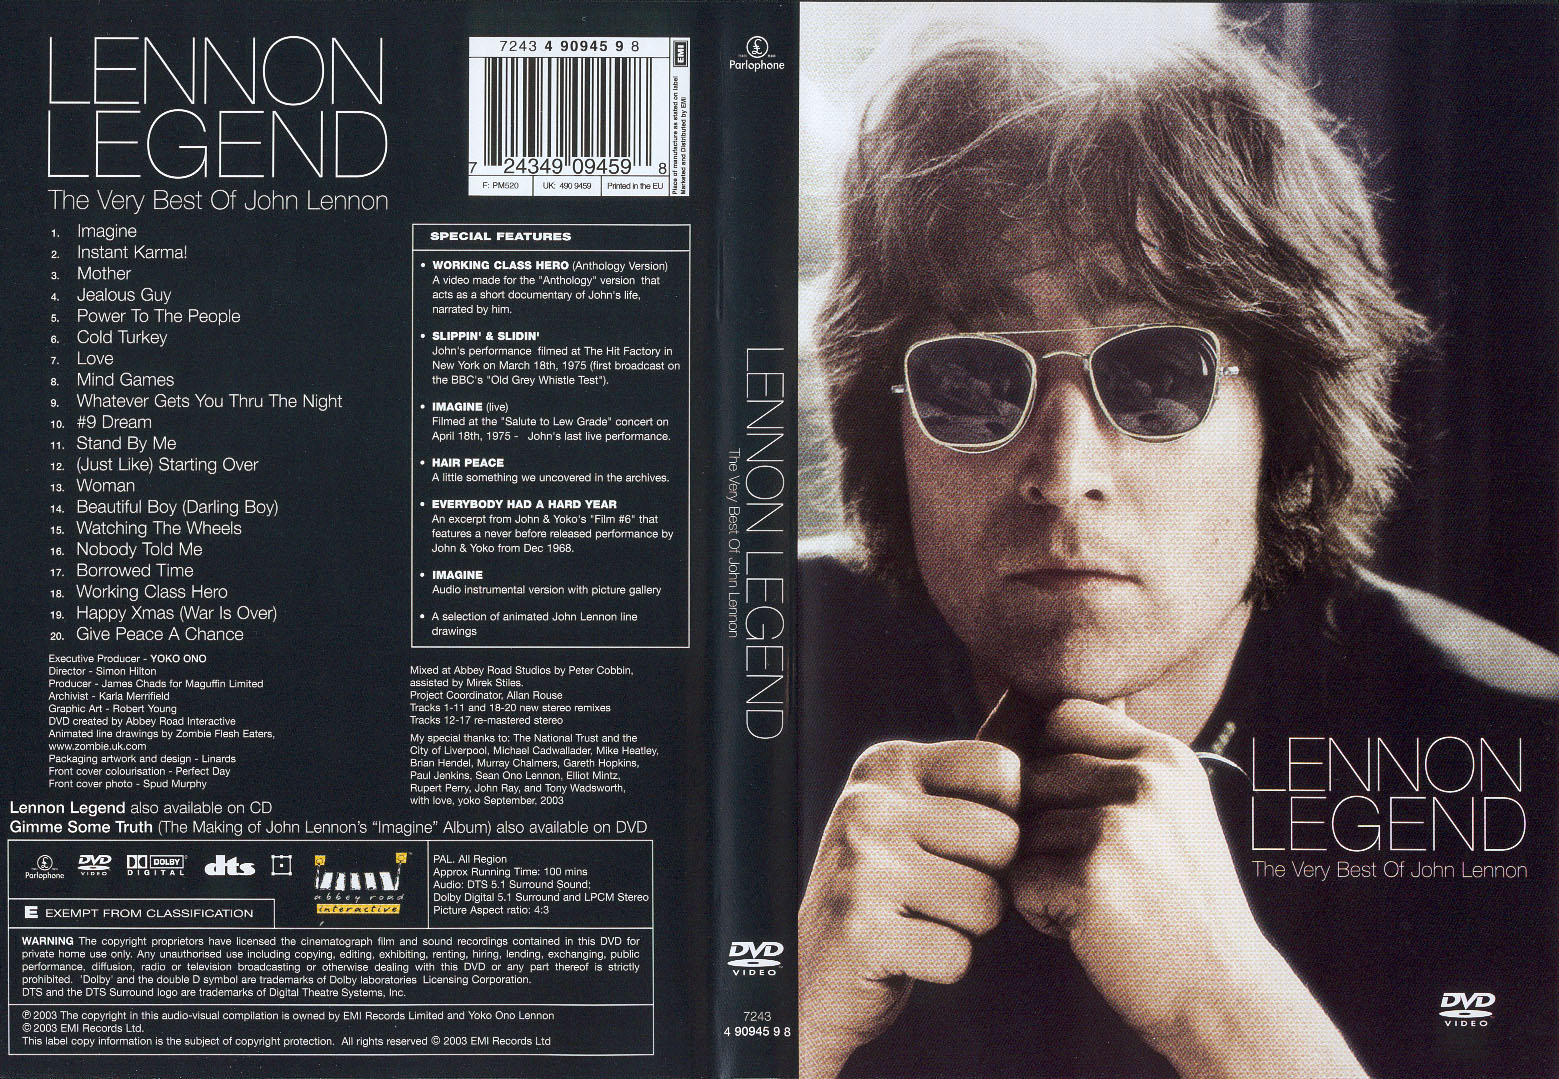 Jaquette DVD John Lennon Legend The Very Best Of John Lennon